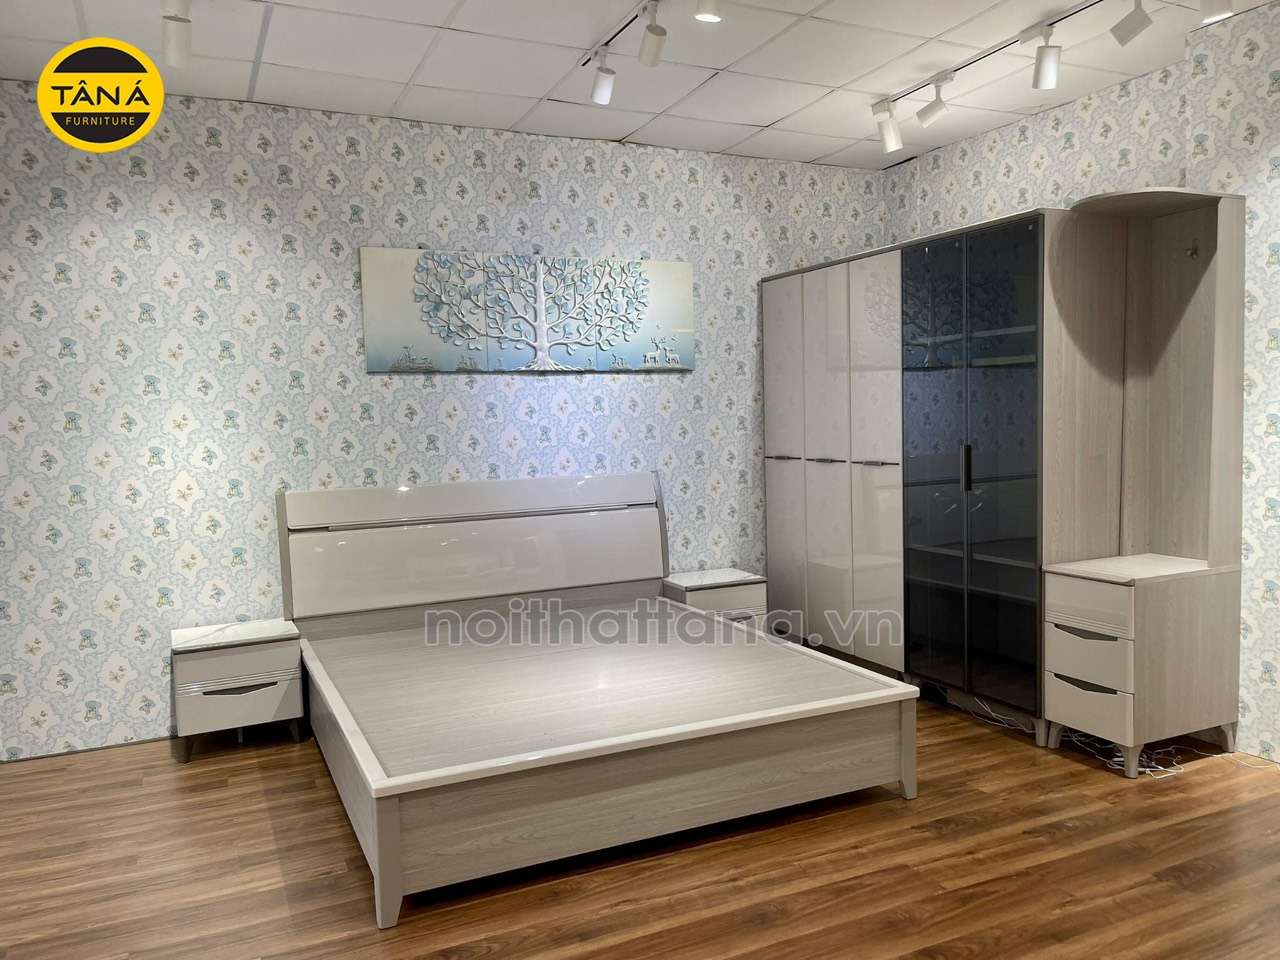 Bộ giường tủ đẹp hiện đại tại Lâm đồng TA-H06